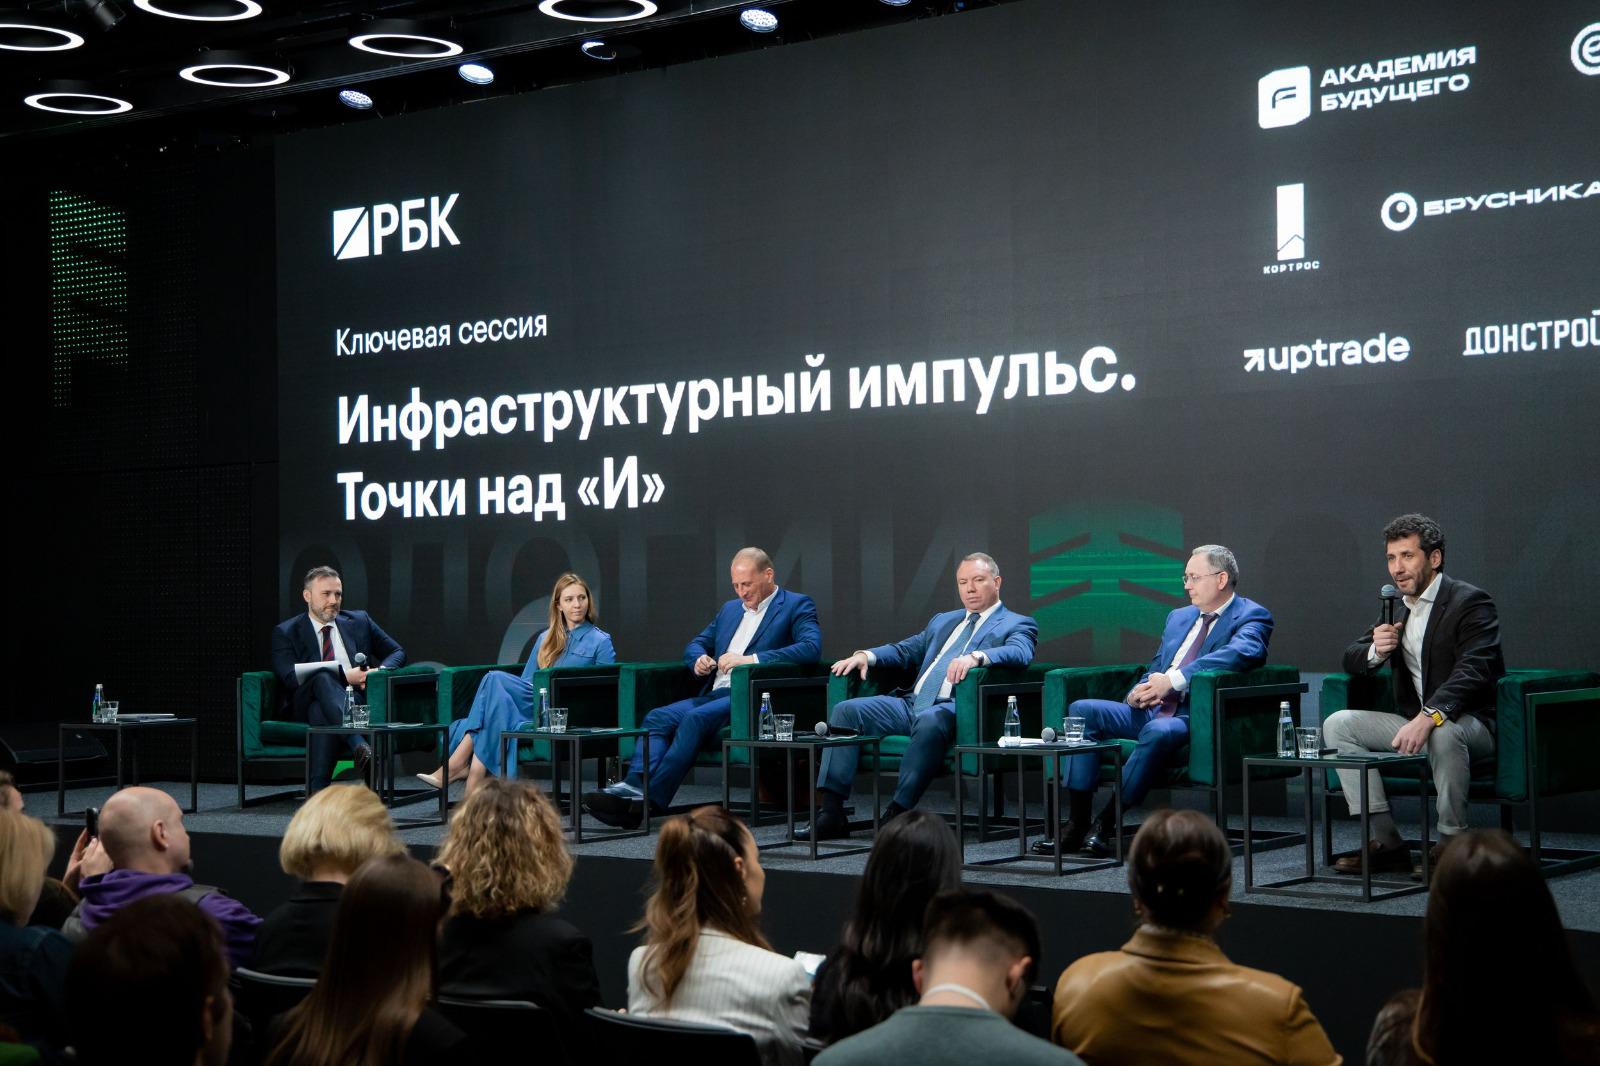 Участники&nbsp;&laquo;Инфрафорума РБК&raquo; обсудили важные вопросы развития инфраструктуры в России